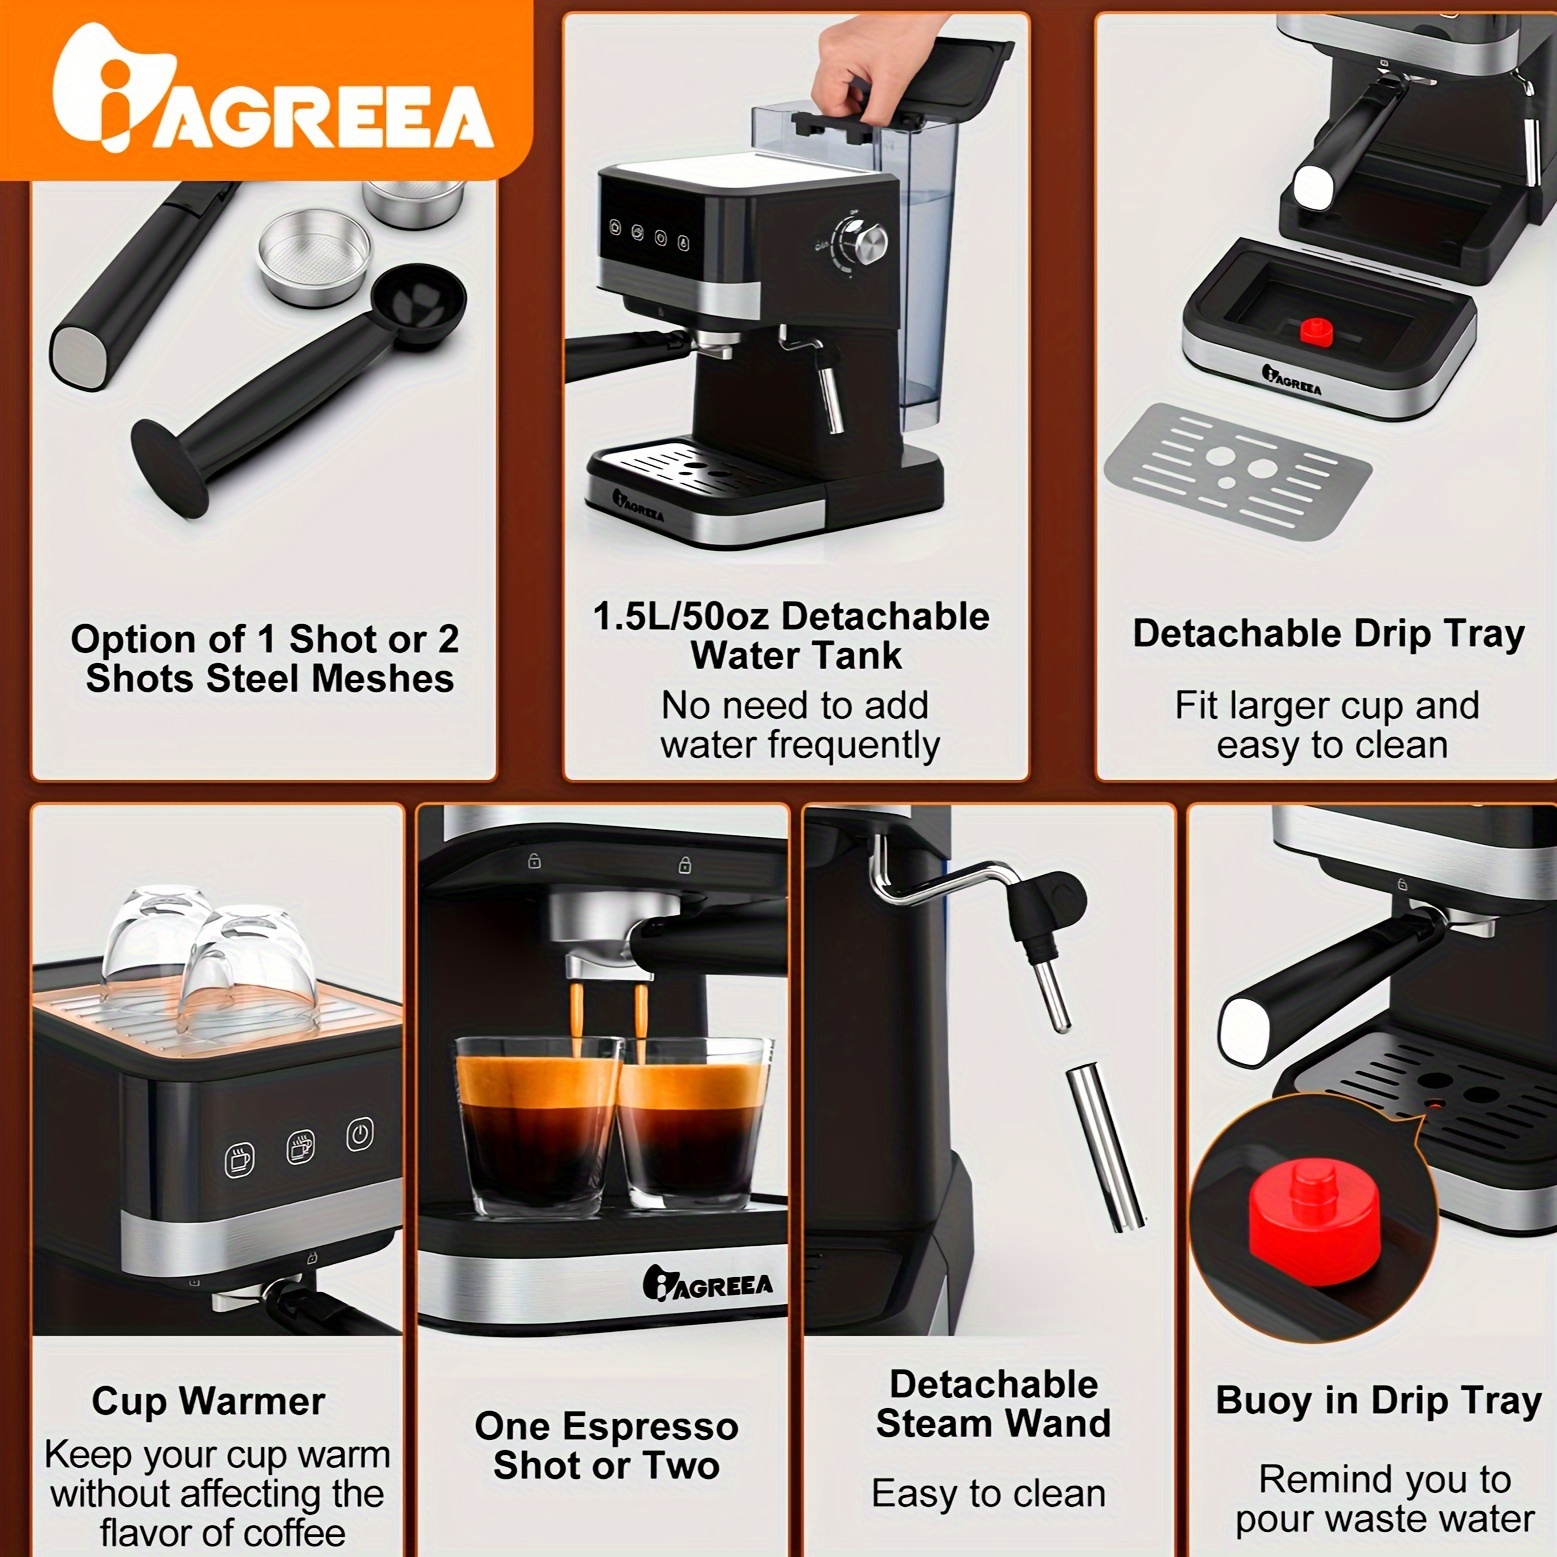 Ihomekee Máquina de café expreso de 15 bar, cafetera espresso con vapor  comercial para café con leche y capuchino, cafetera Expresso con tanque de